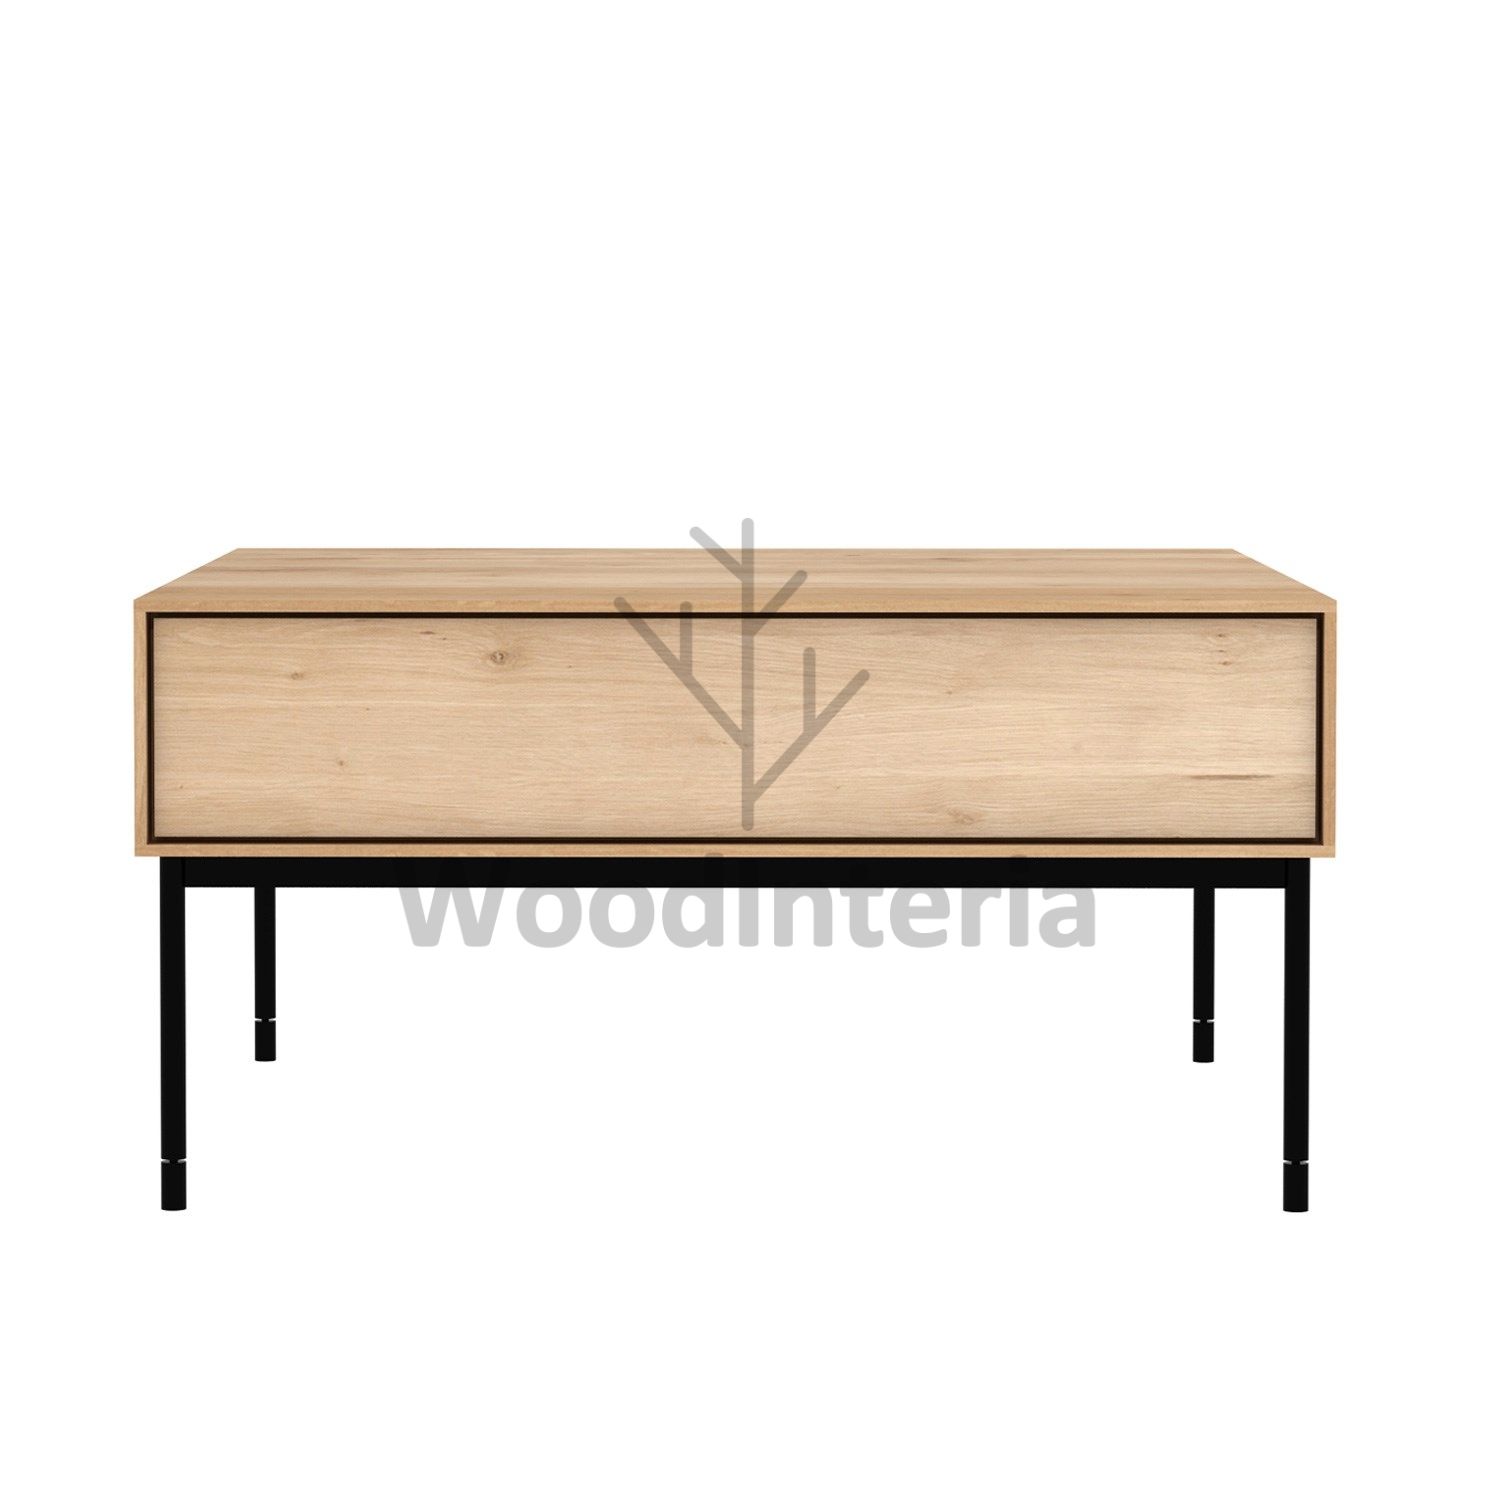 фото журнальный стол oak frame 70 в интерьере лофт эко | WoodInteria